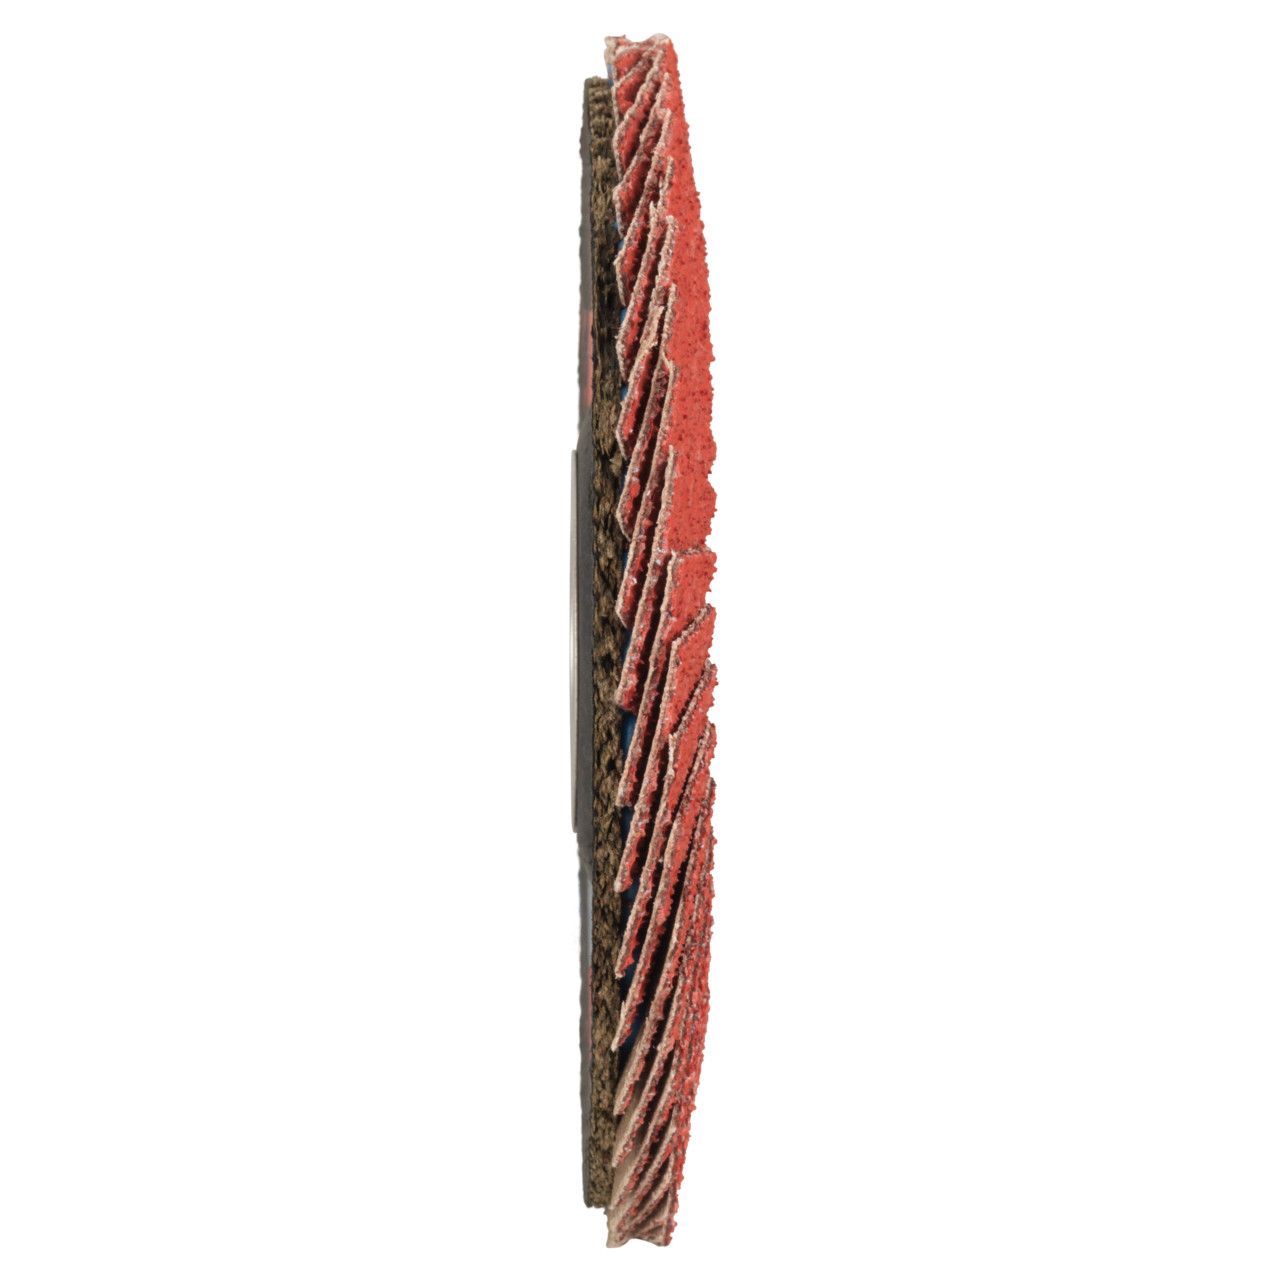 Tyrolit Getande borgring DxH 125x22,2 CERAMIC voor roestvrij staal, P40, vorm: 27A - slingerontwerp (glasvezeldragerhuisontwerp), Art. 645135